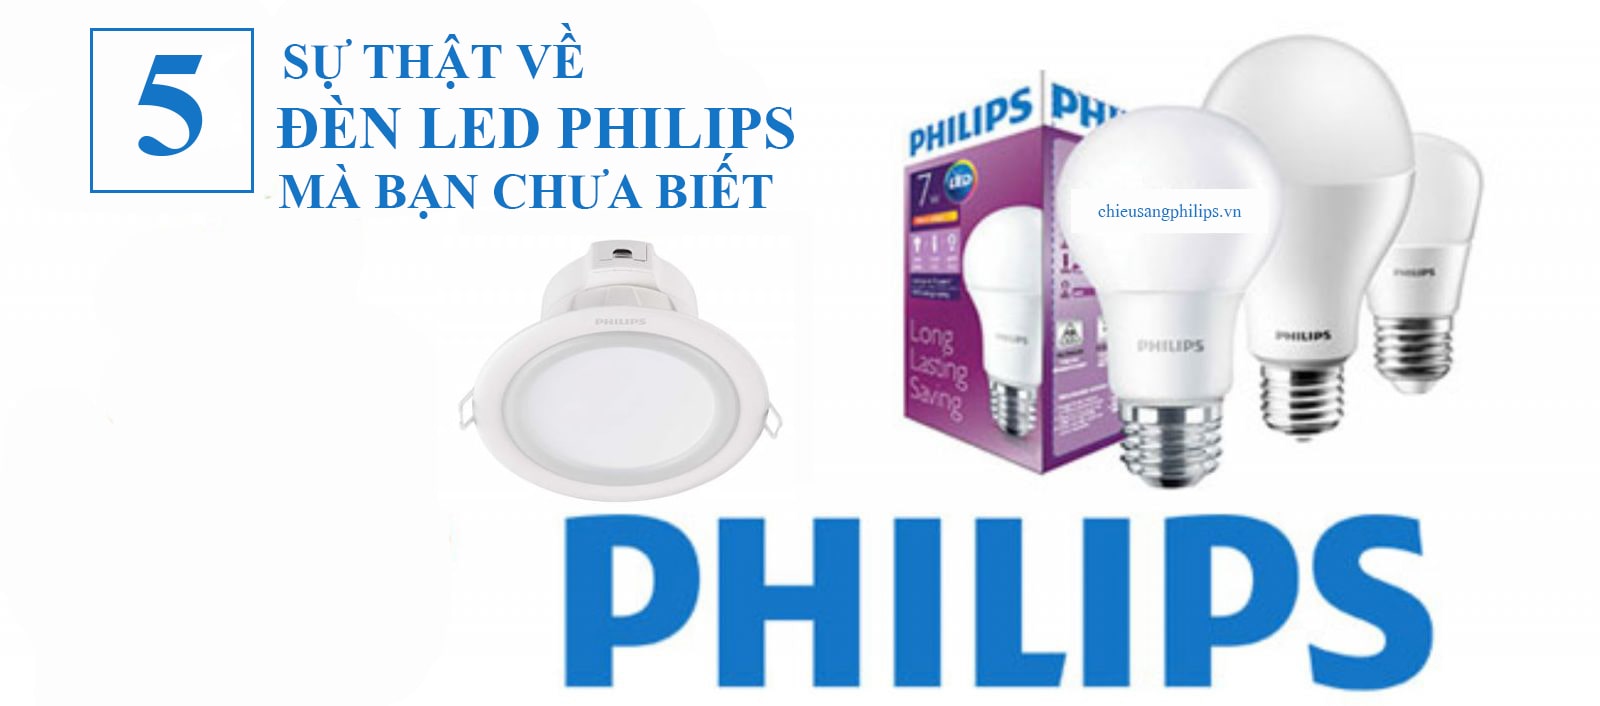 5 sự thật về đèn led Philips mà có thể bạn chưa biết